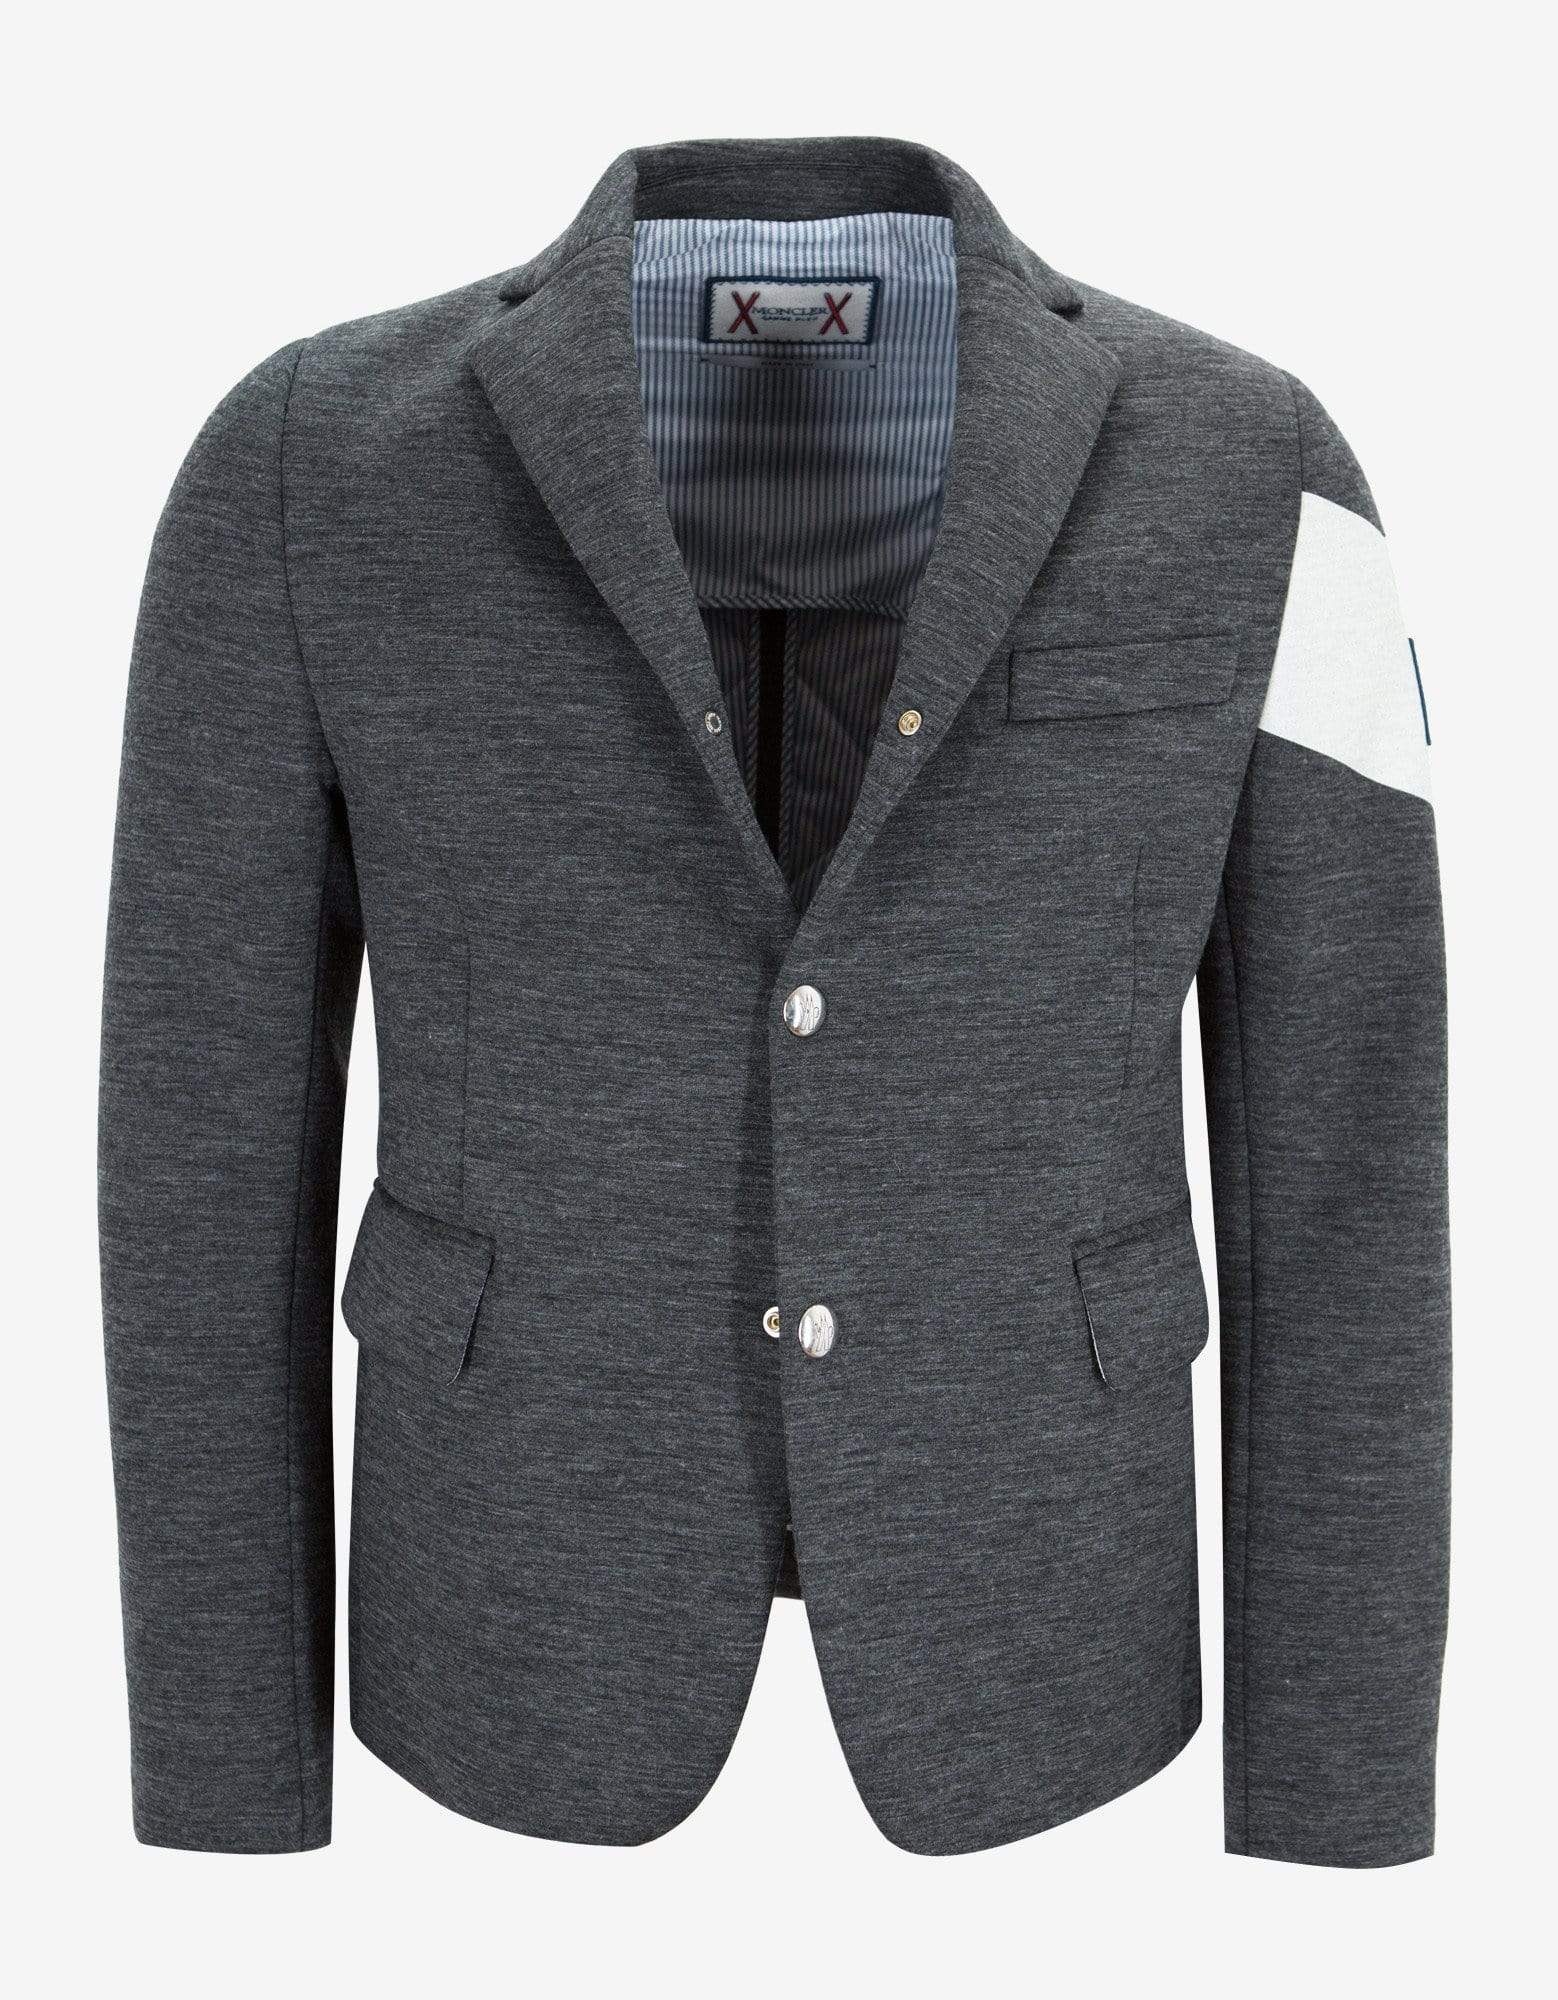 Grey Wool Blazer Style Down Jacket - 1